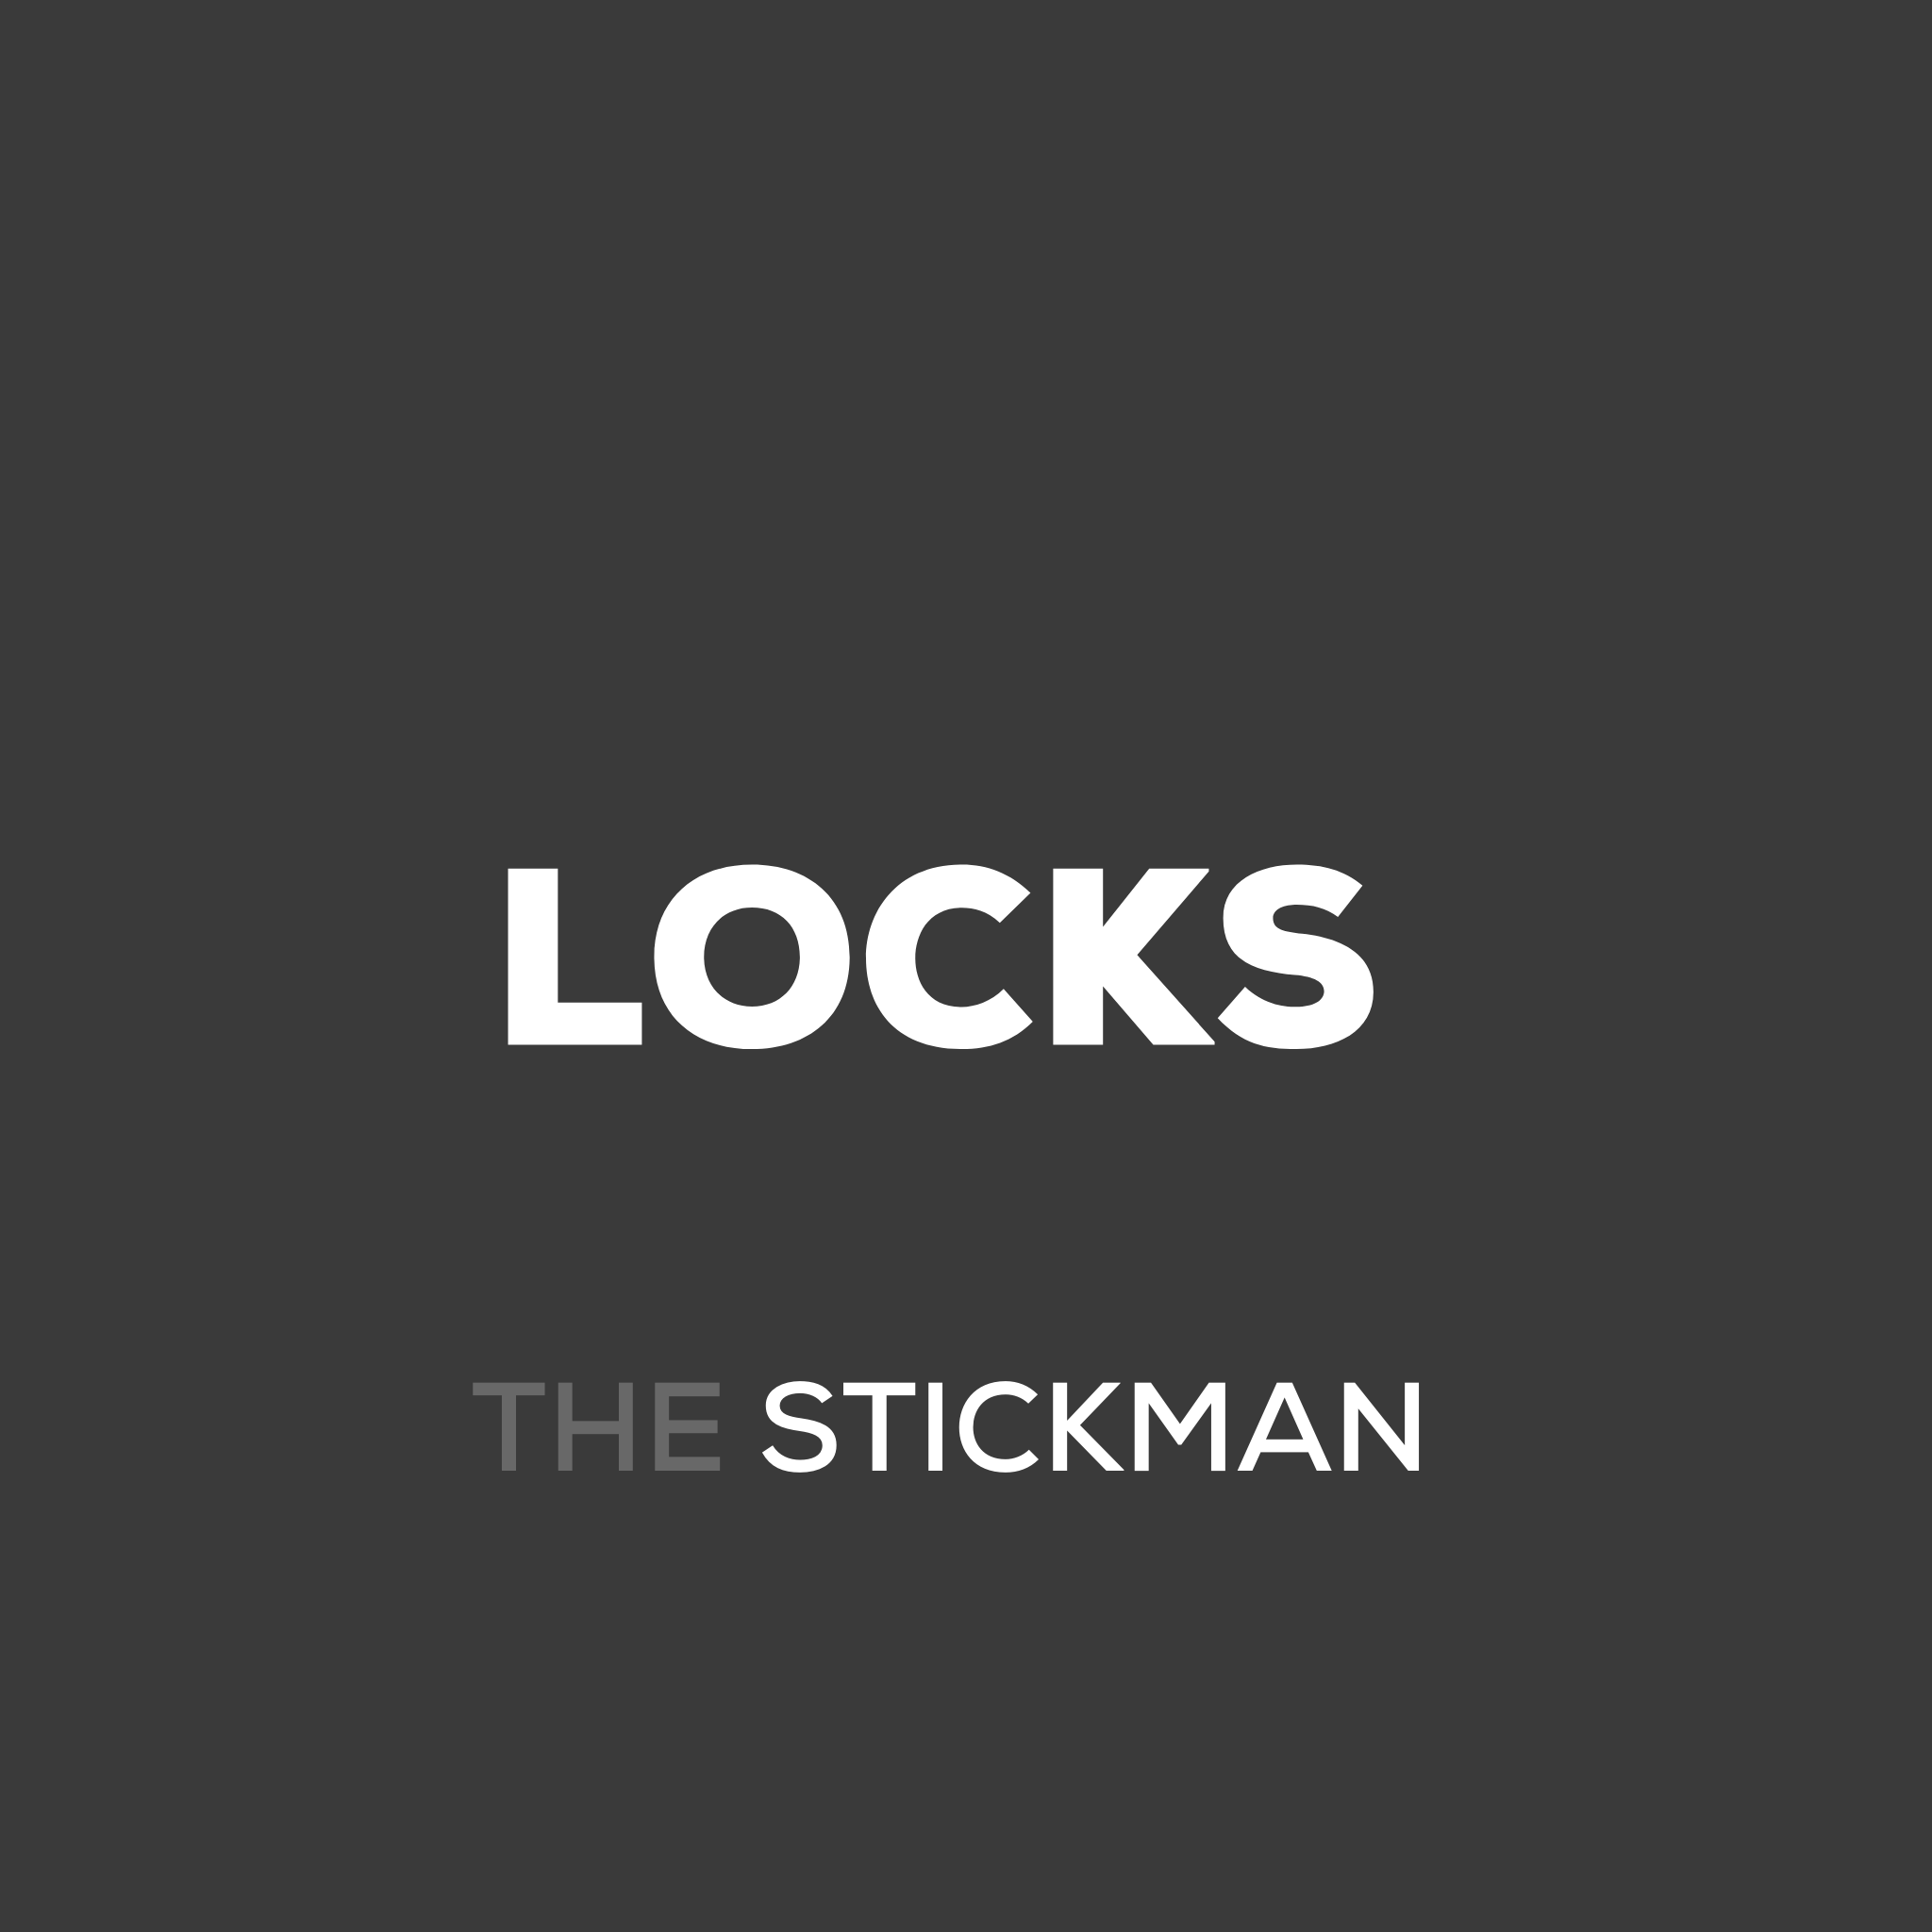 Locks - see below for more locks: